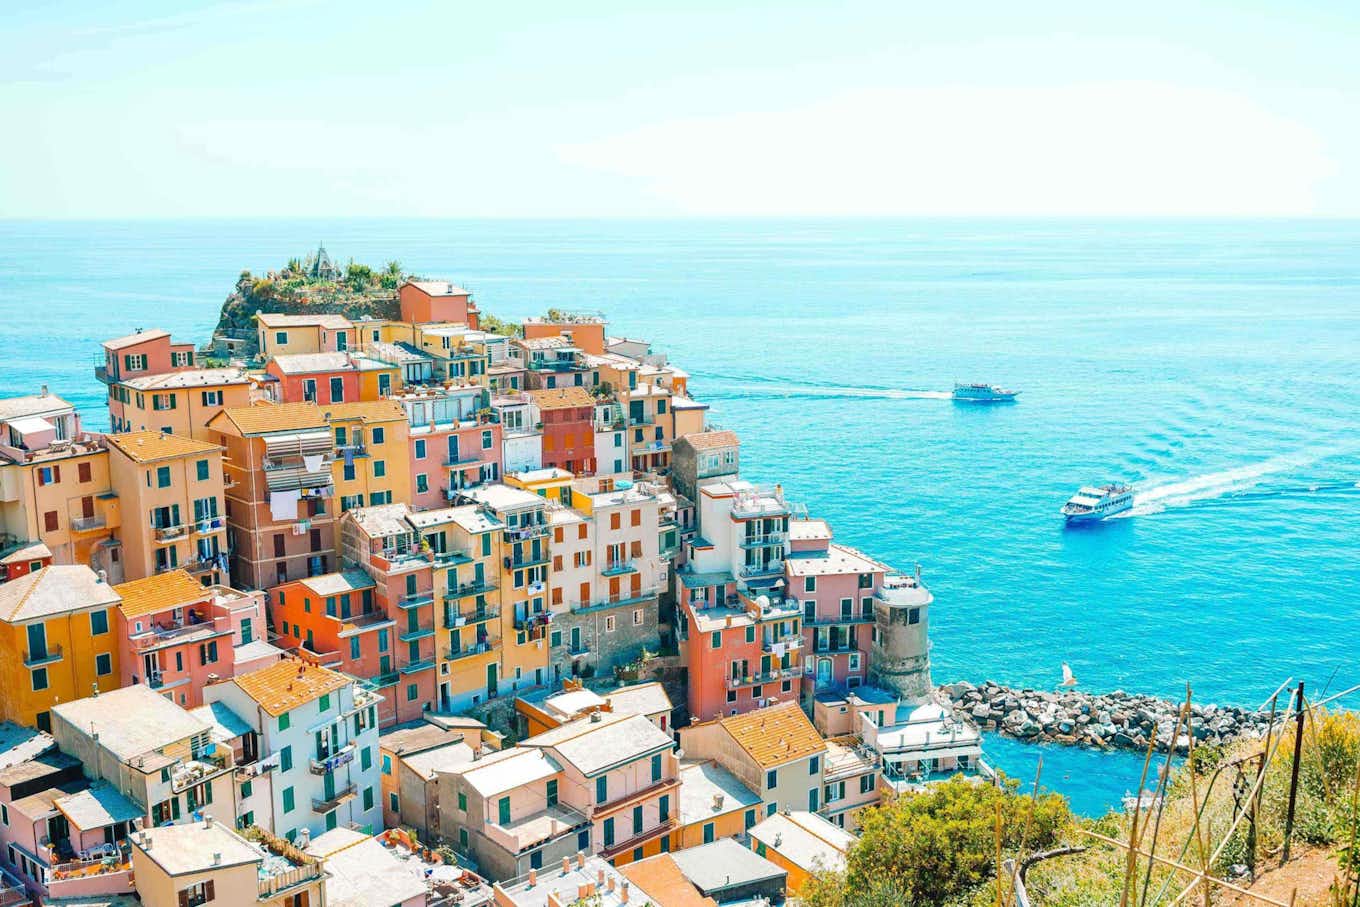 de stad en kleurrijke huizen in Cinque Terre